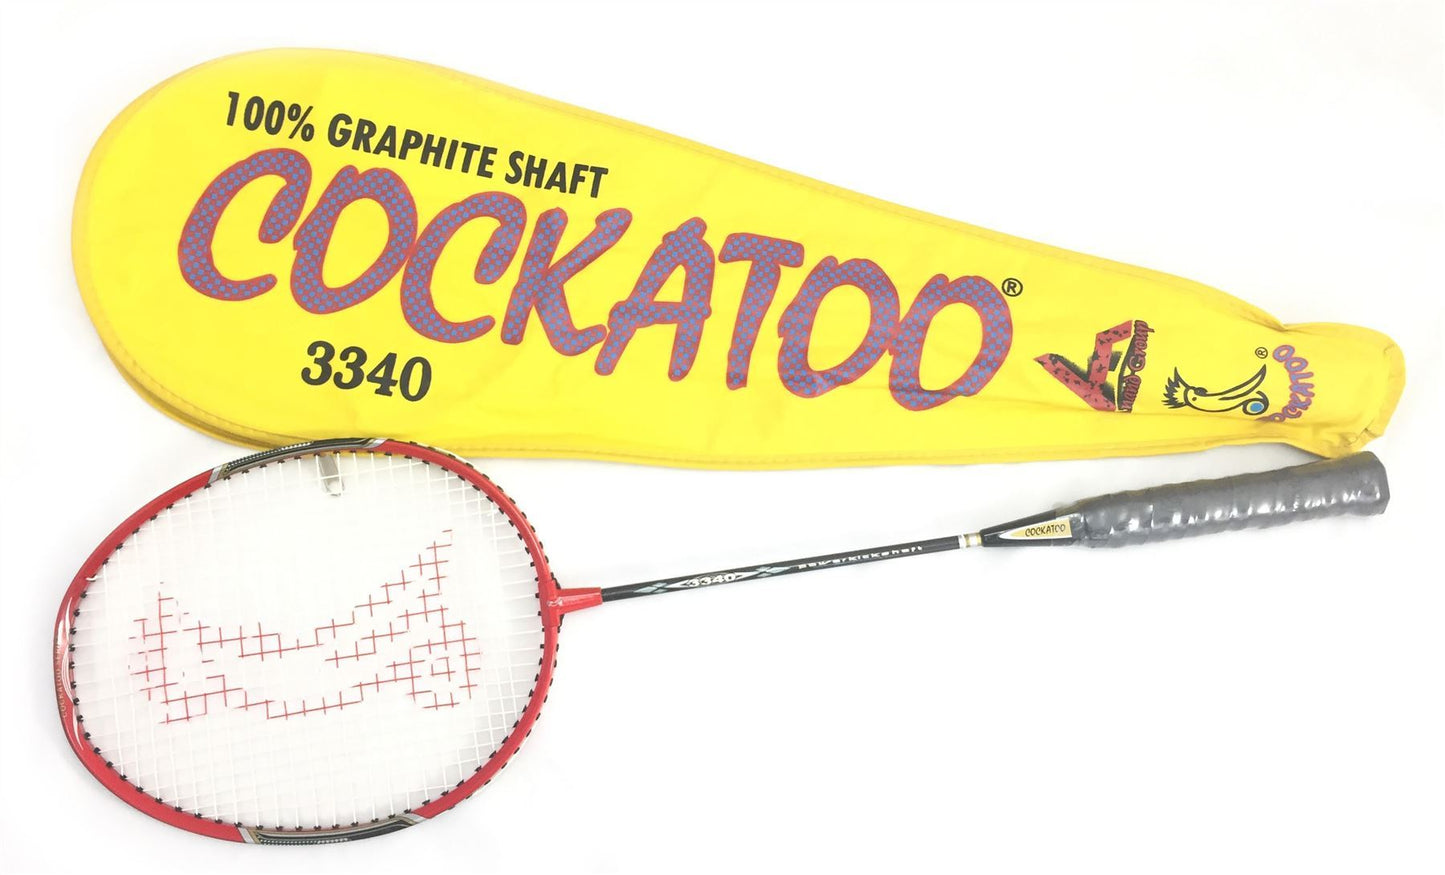 Buy Cockatoo 3340 Badminton Racket (Yellow)-Badminton Racket-Splay (UK) Limited-Splay UK Online